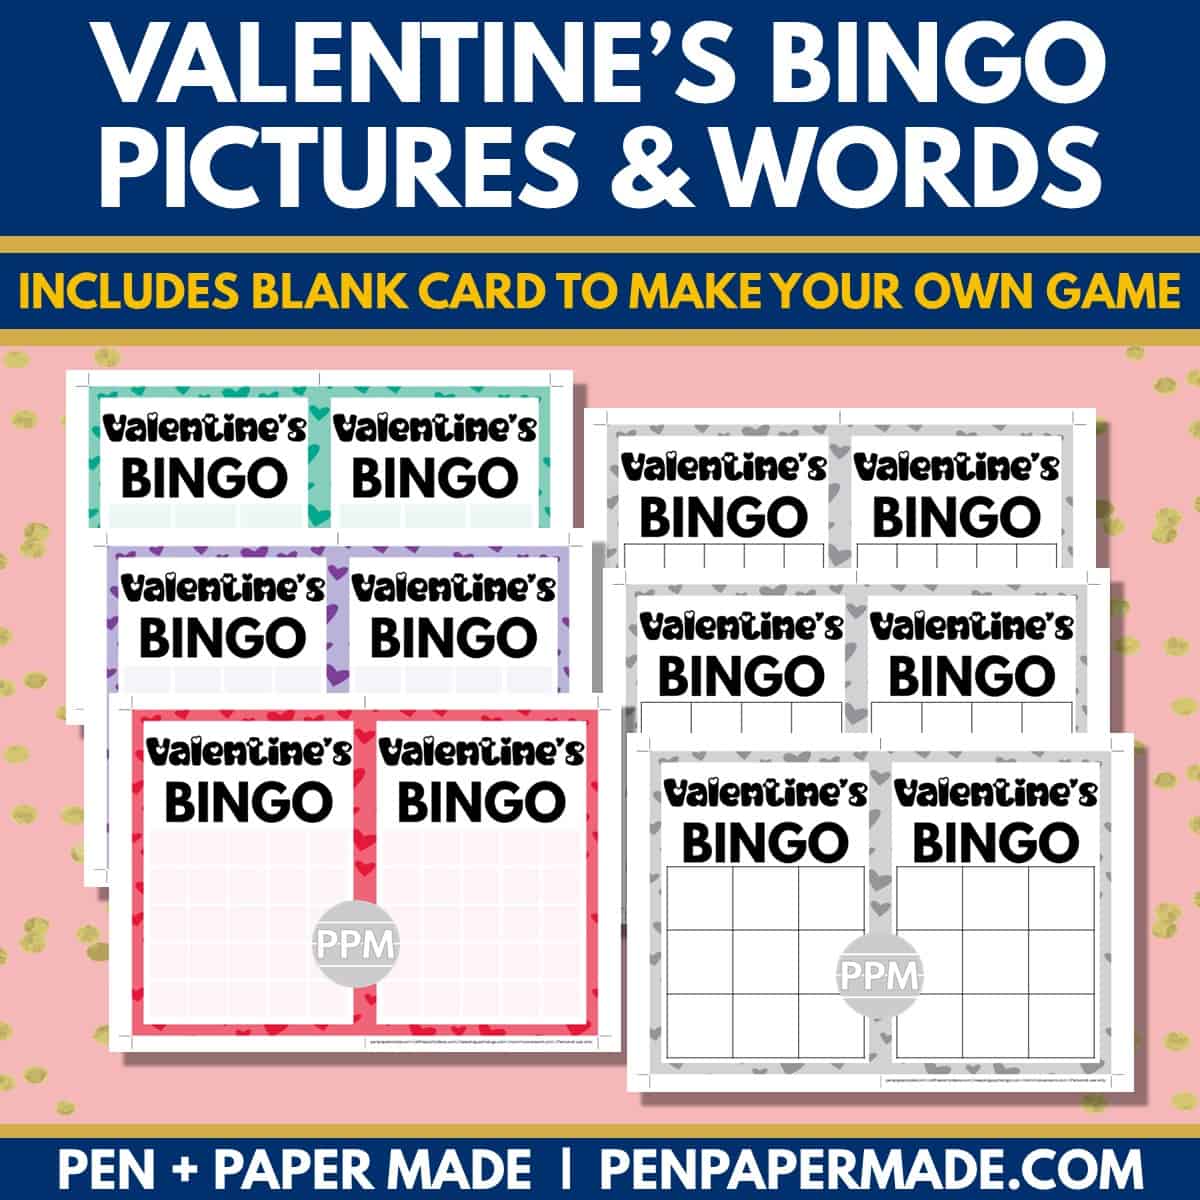 valentine's day bingo 5x5, 4x4, 3x3 bingo card blank template.